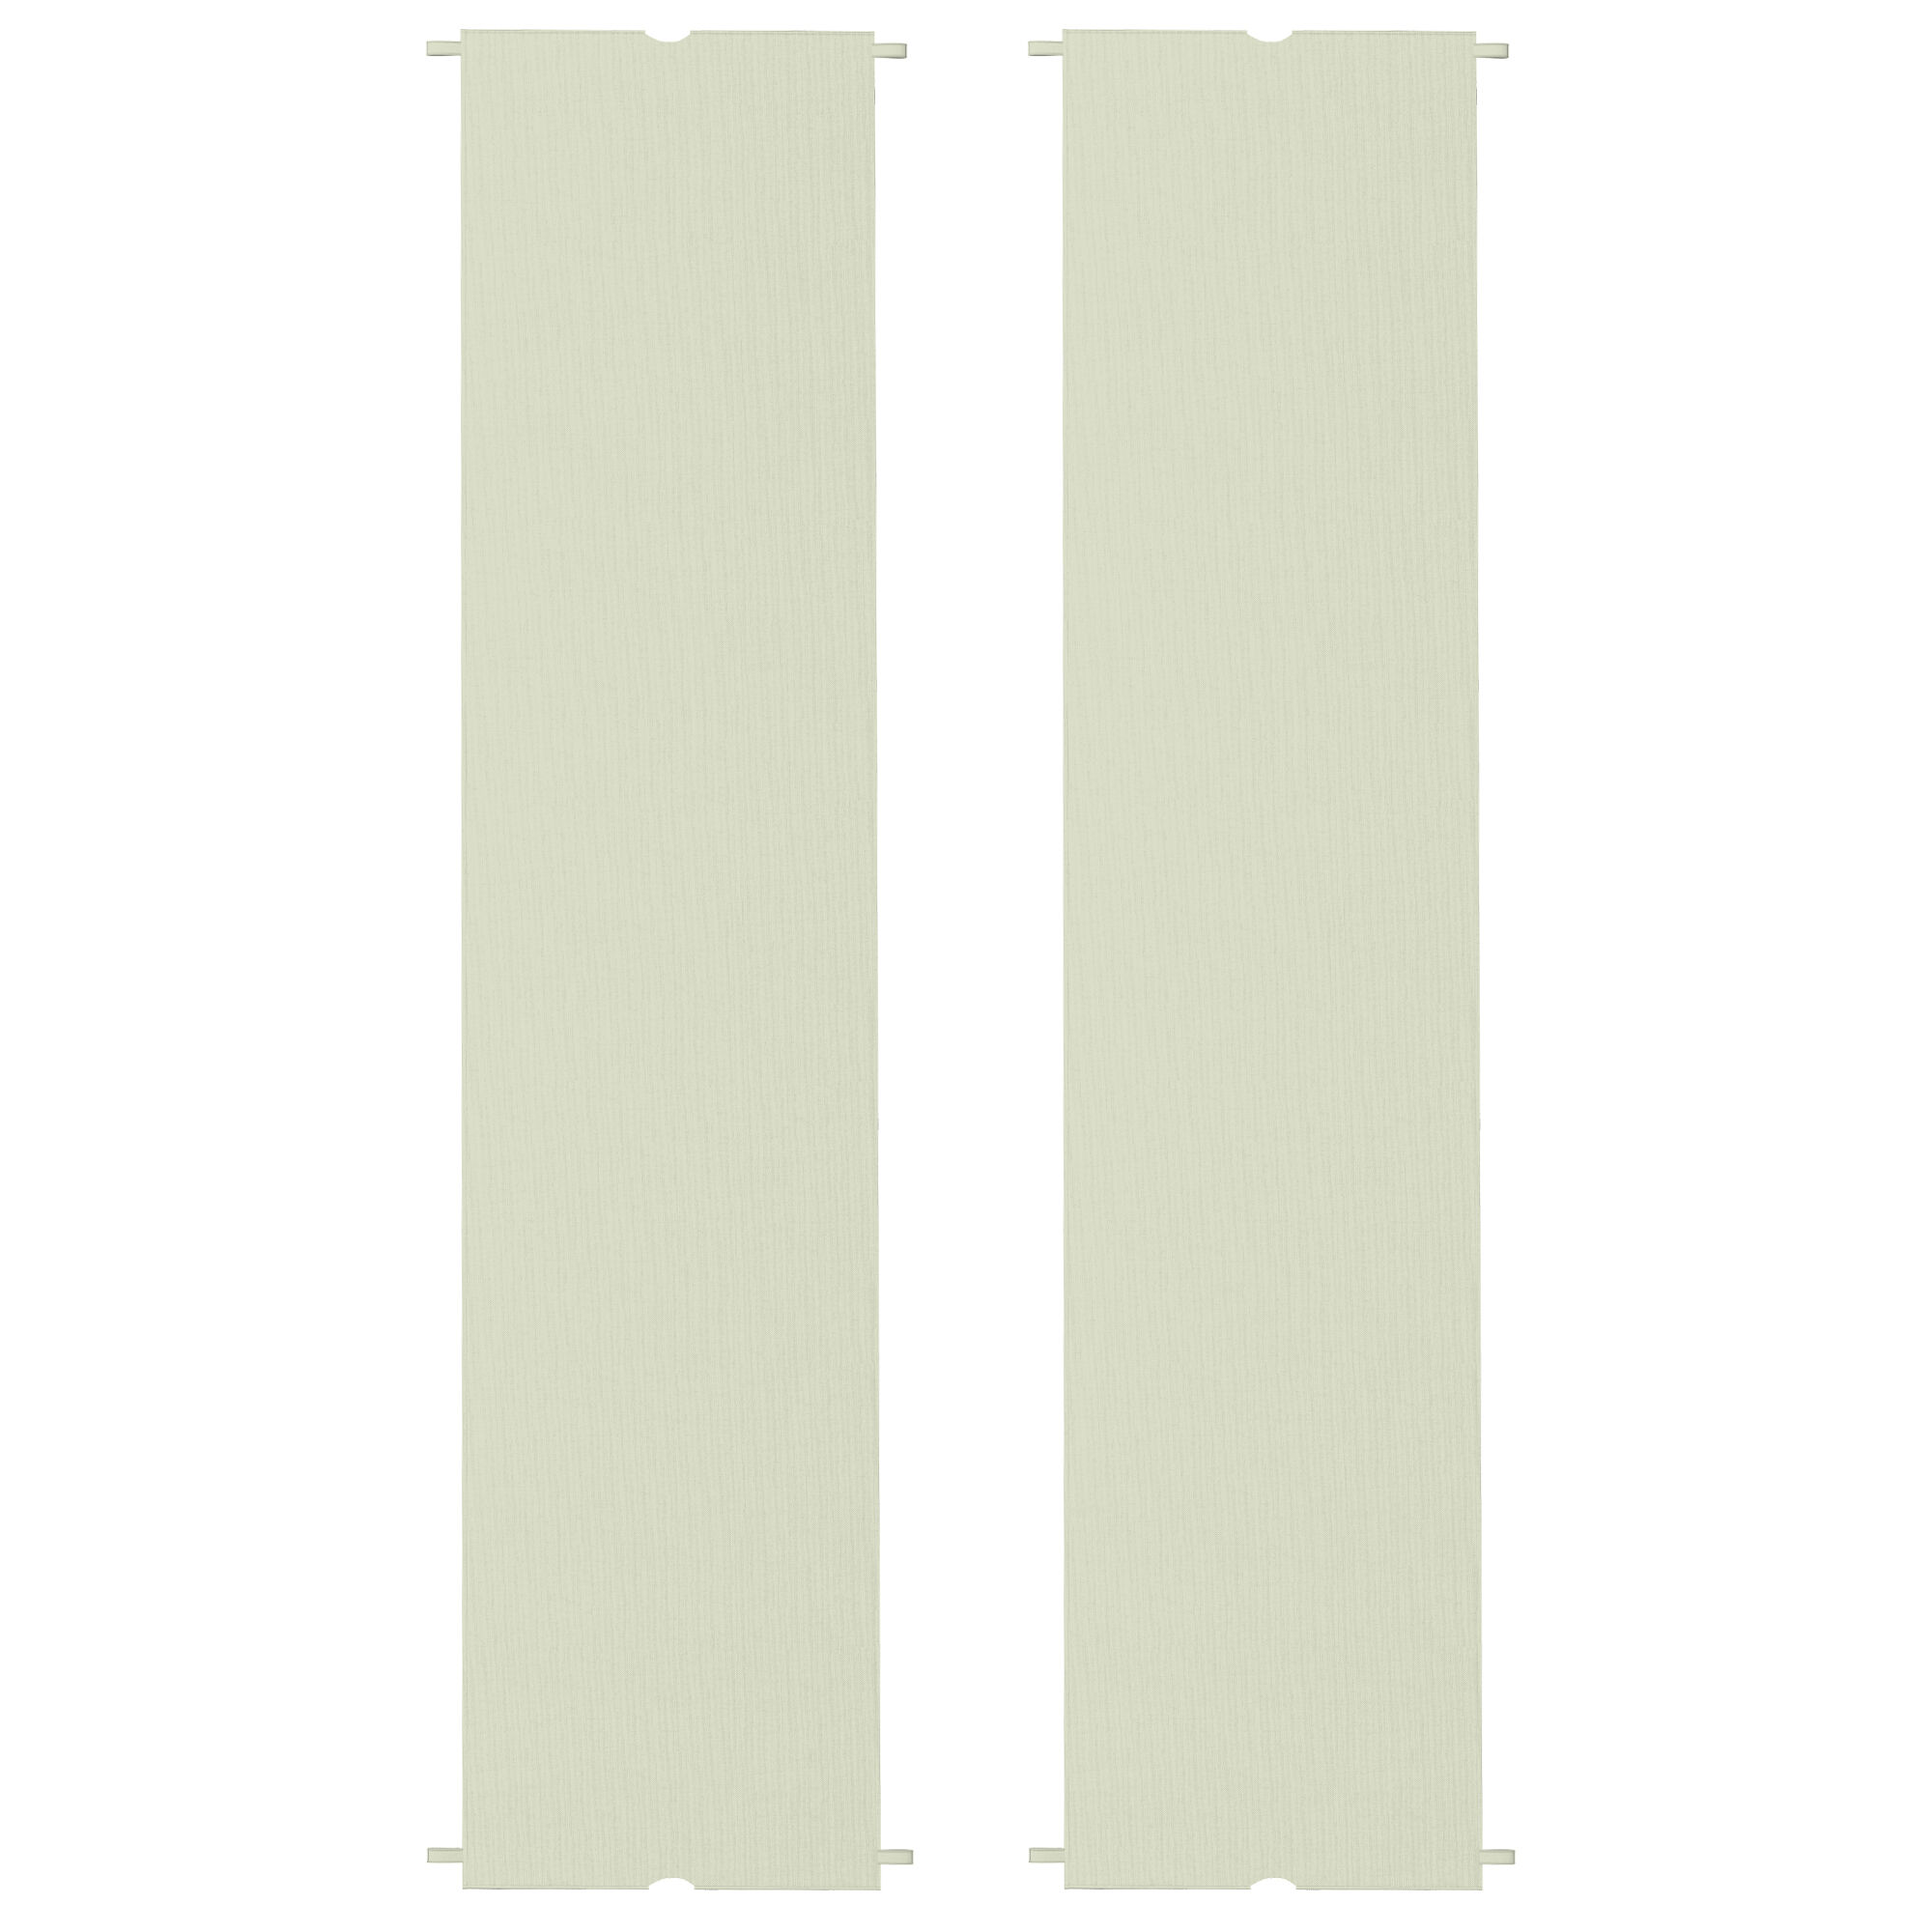 Outsunny Copertura per Gazebo Pergola 3x3 m in Poliestere con Tasche e Cinghie, 488x122 cm, color Kaki